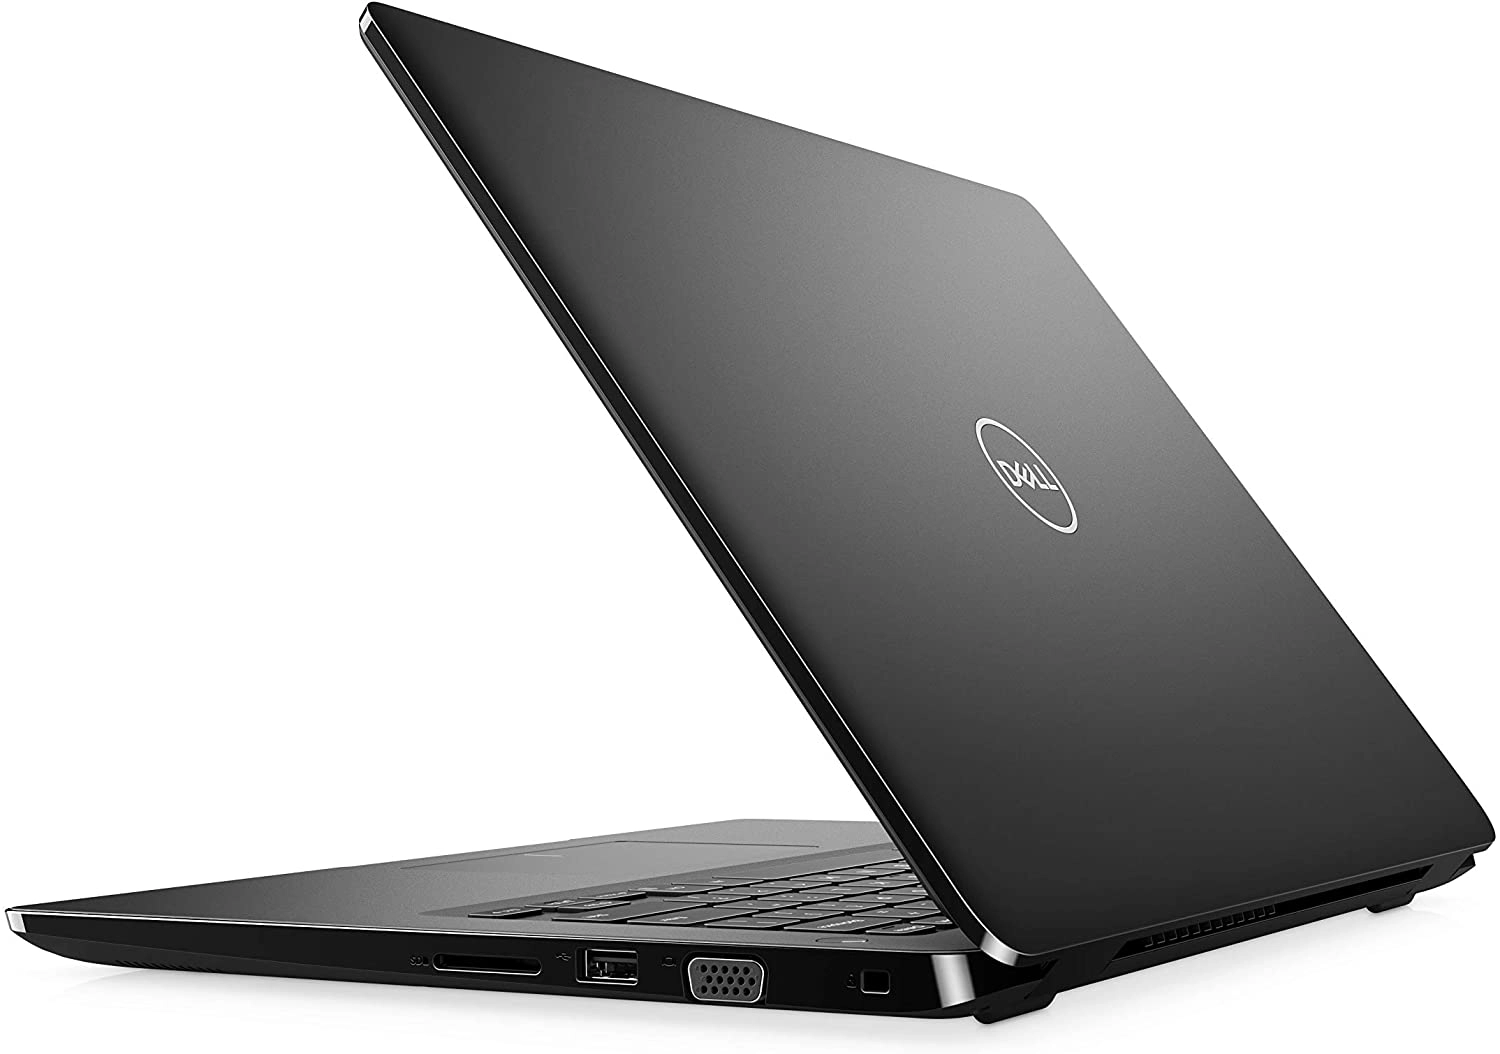 Dell 5DC1D laptop image